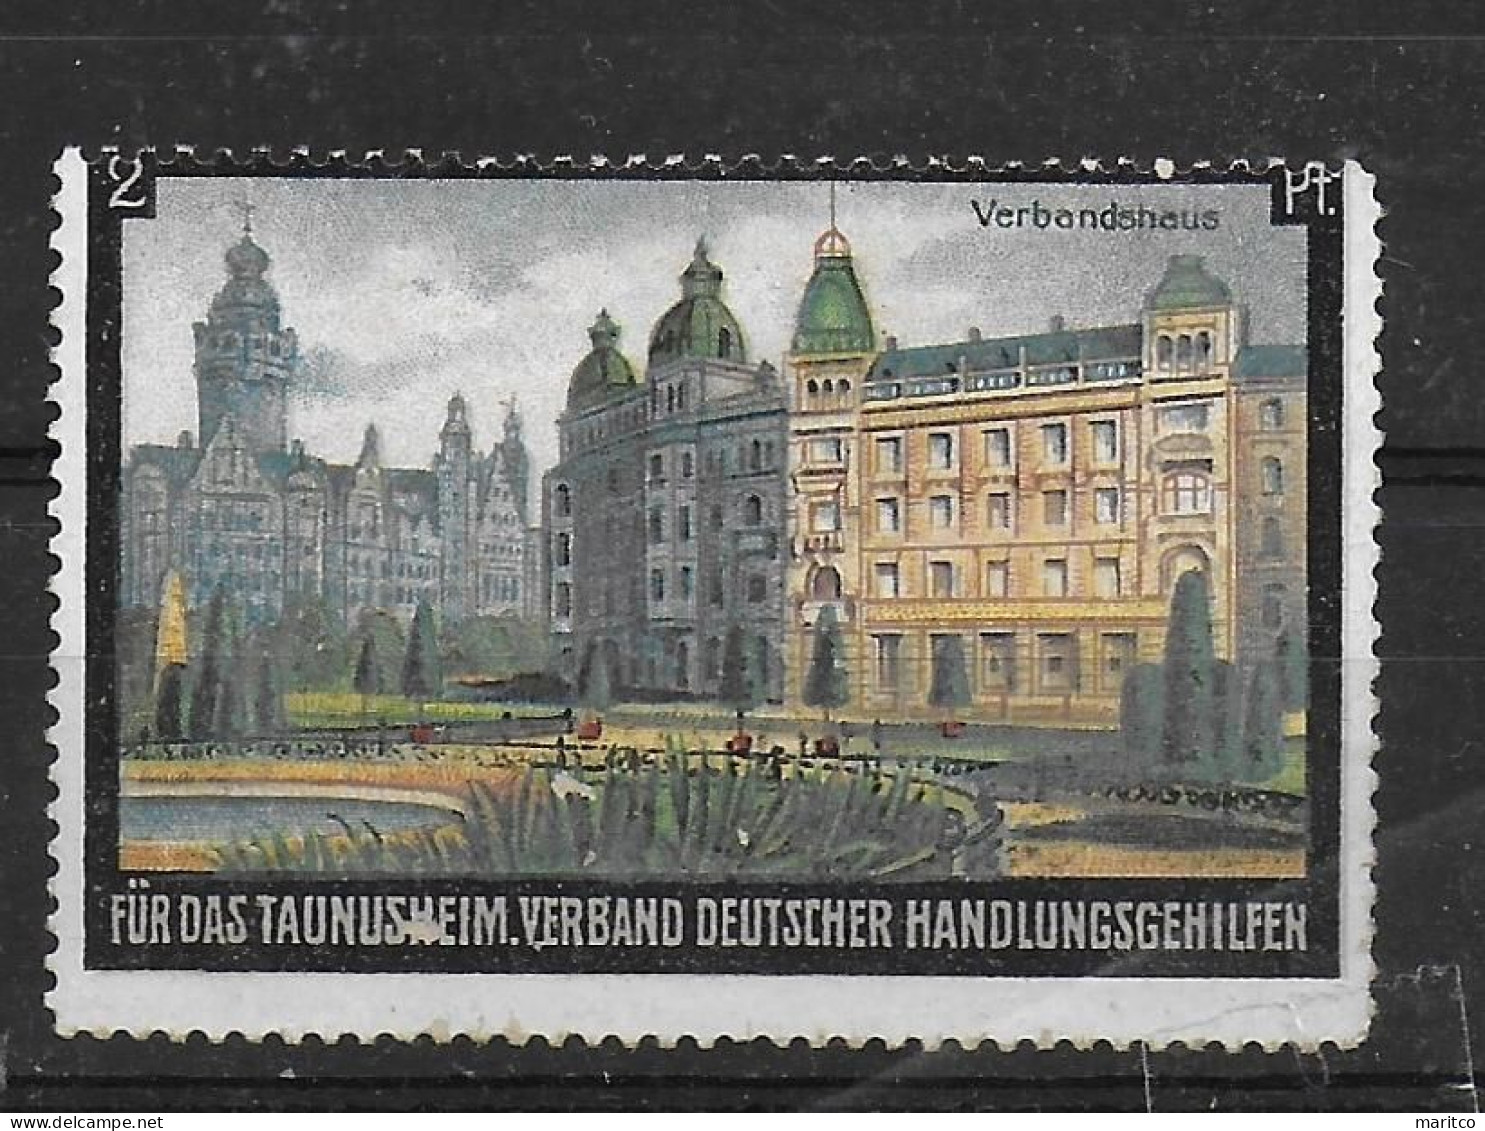 Deutsches Reich Taunusheim Verbandshaus Spendenmarke Cinderella Vignet Werbemarke Propaganda - Vignettes De Fantaisie